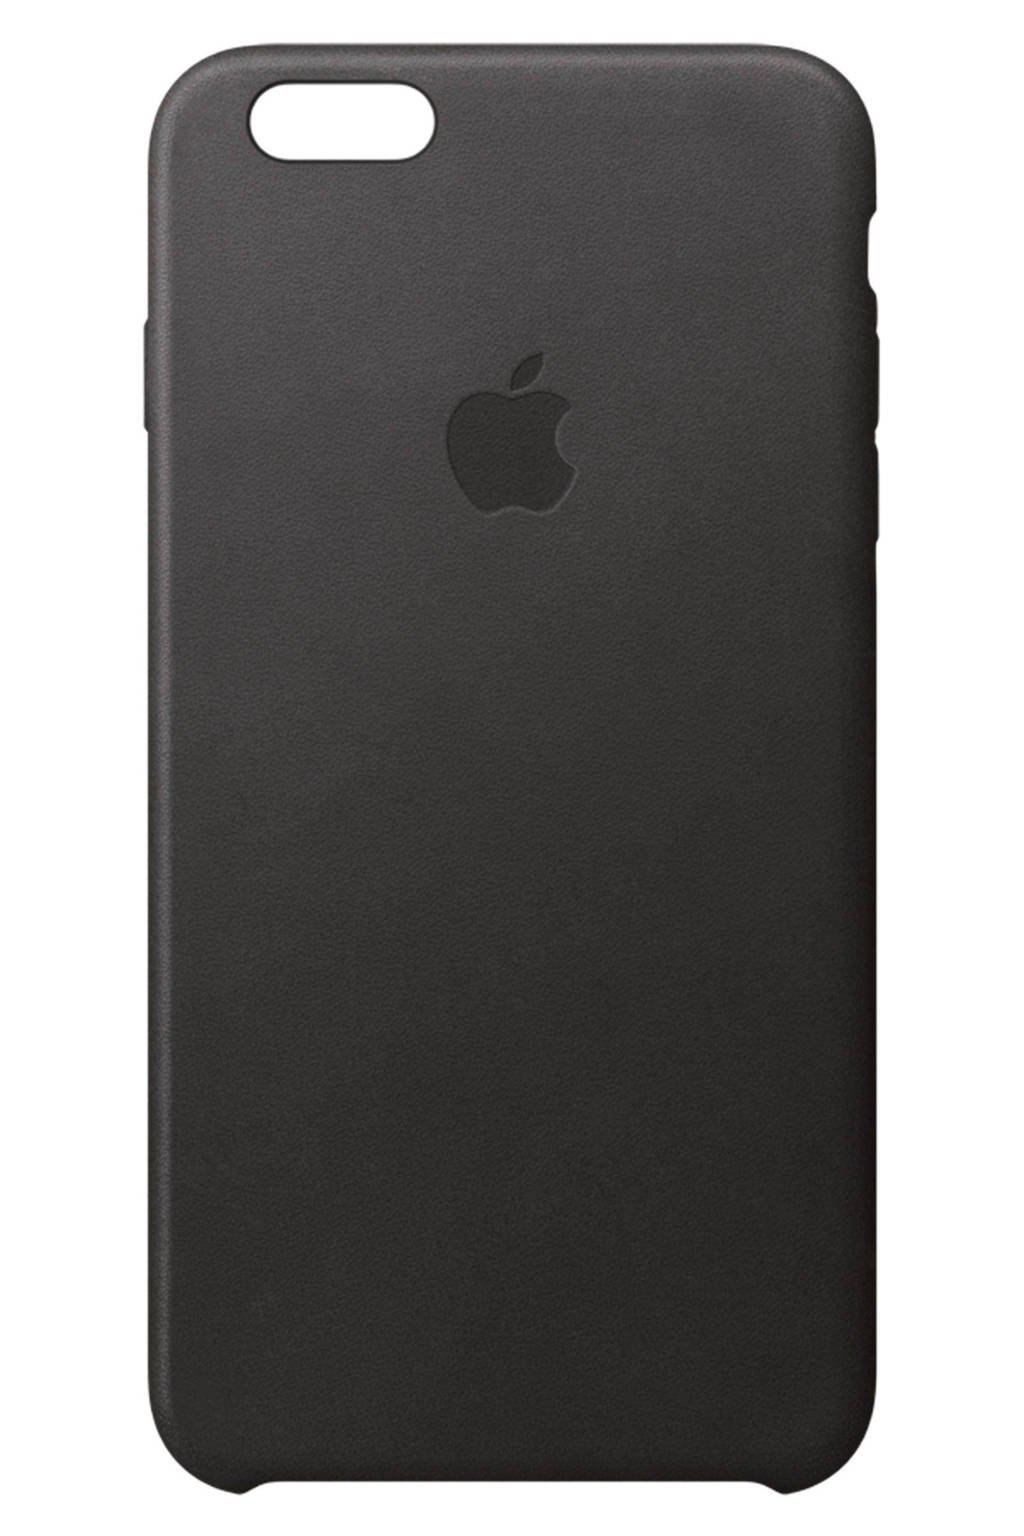 Rusteloosheid aankomen regen Apple iPhone 6/6s leren case | wehkamp